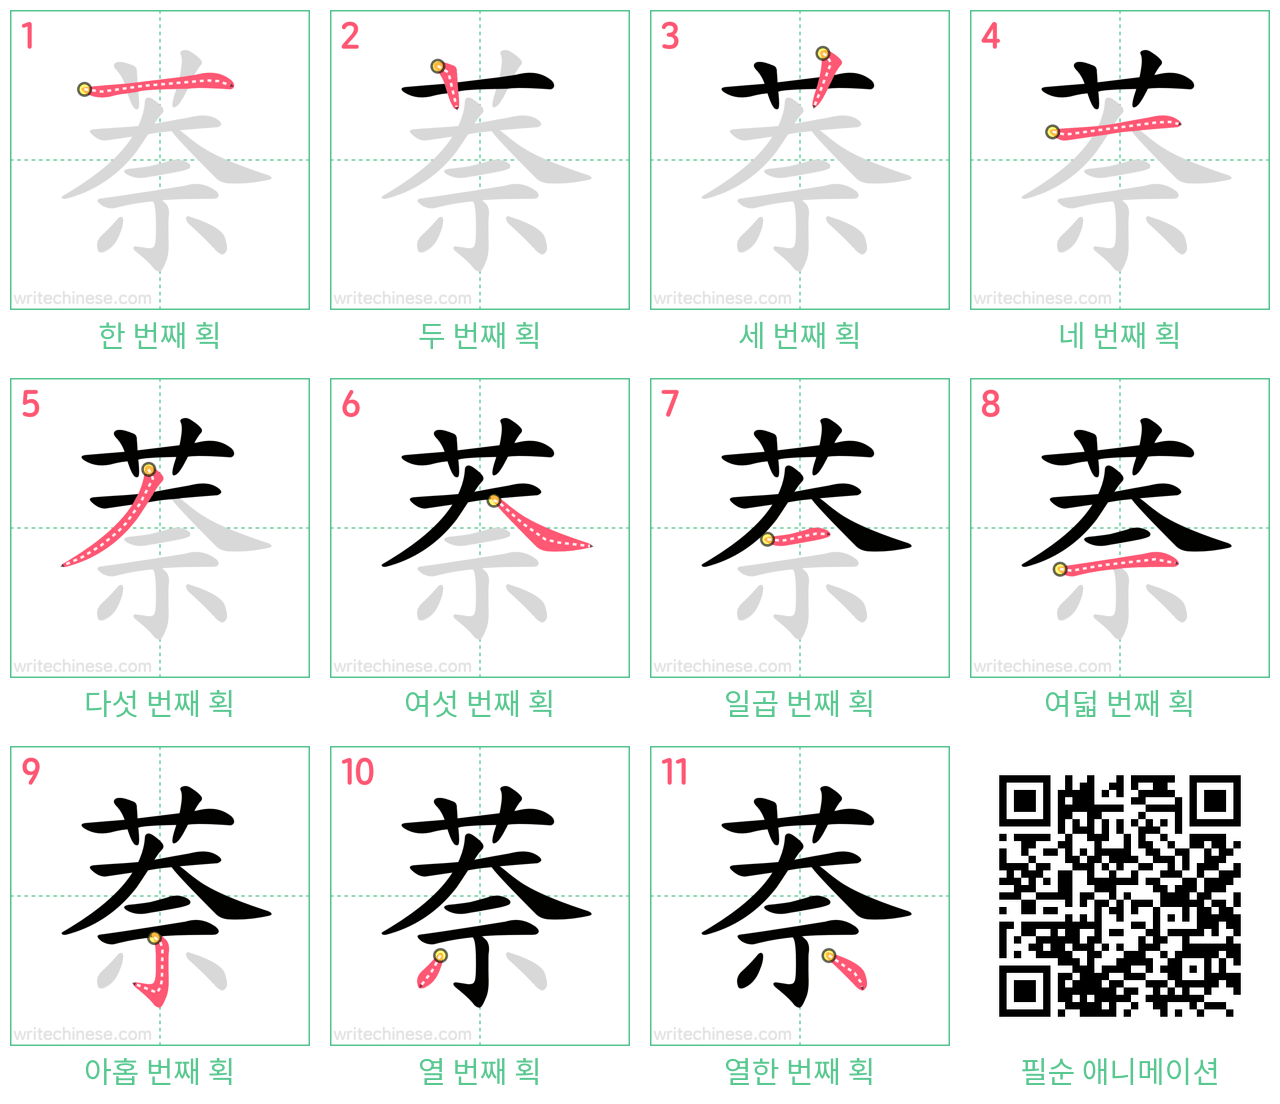 萘 step-by-step stroke order diagrams